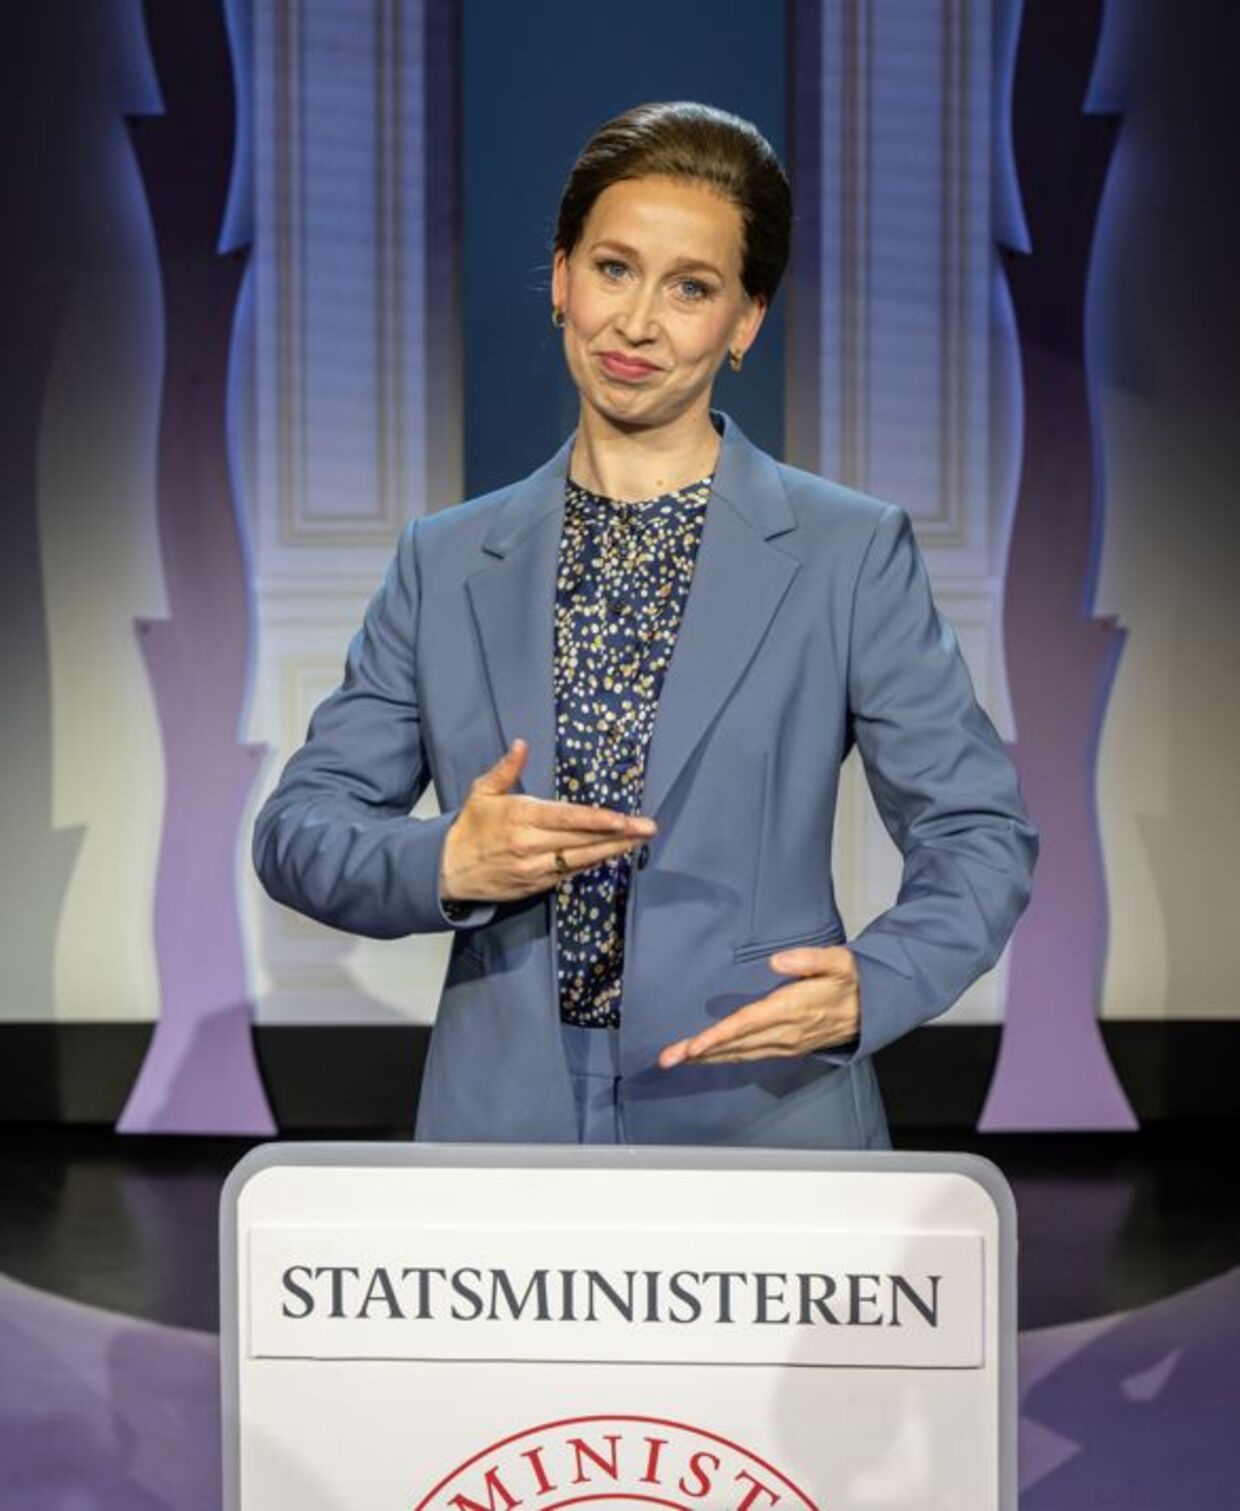 Eminente Merete Mærkedahl som Mette Frederiksen.